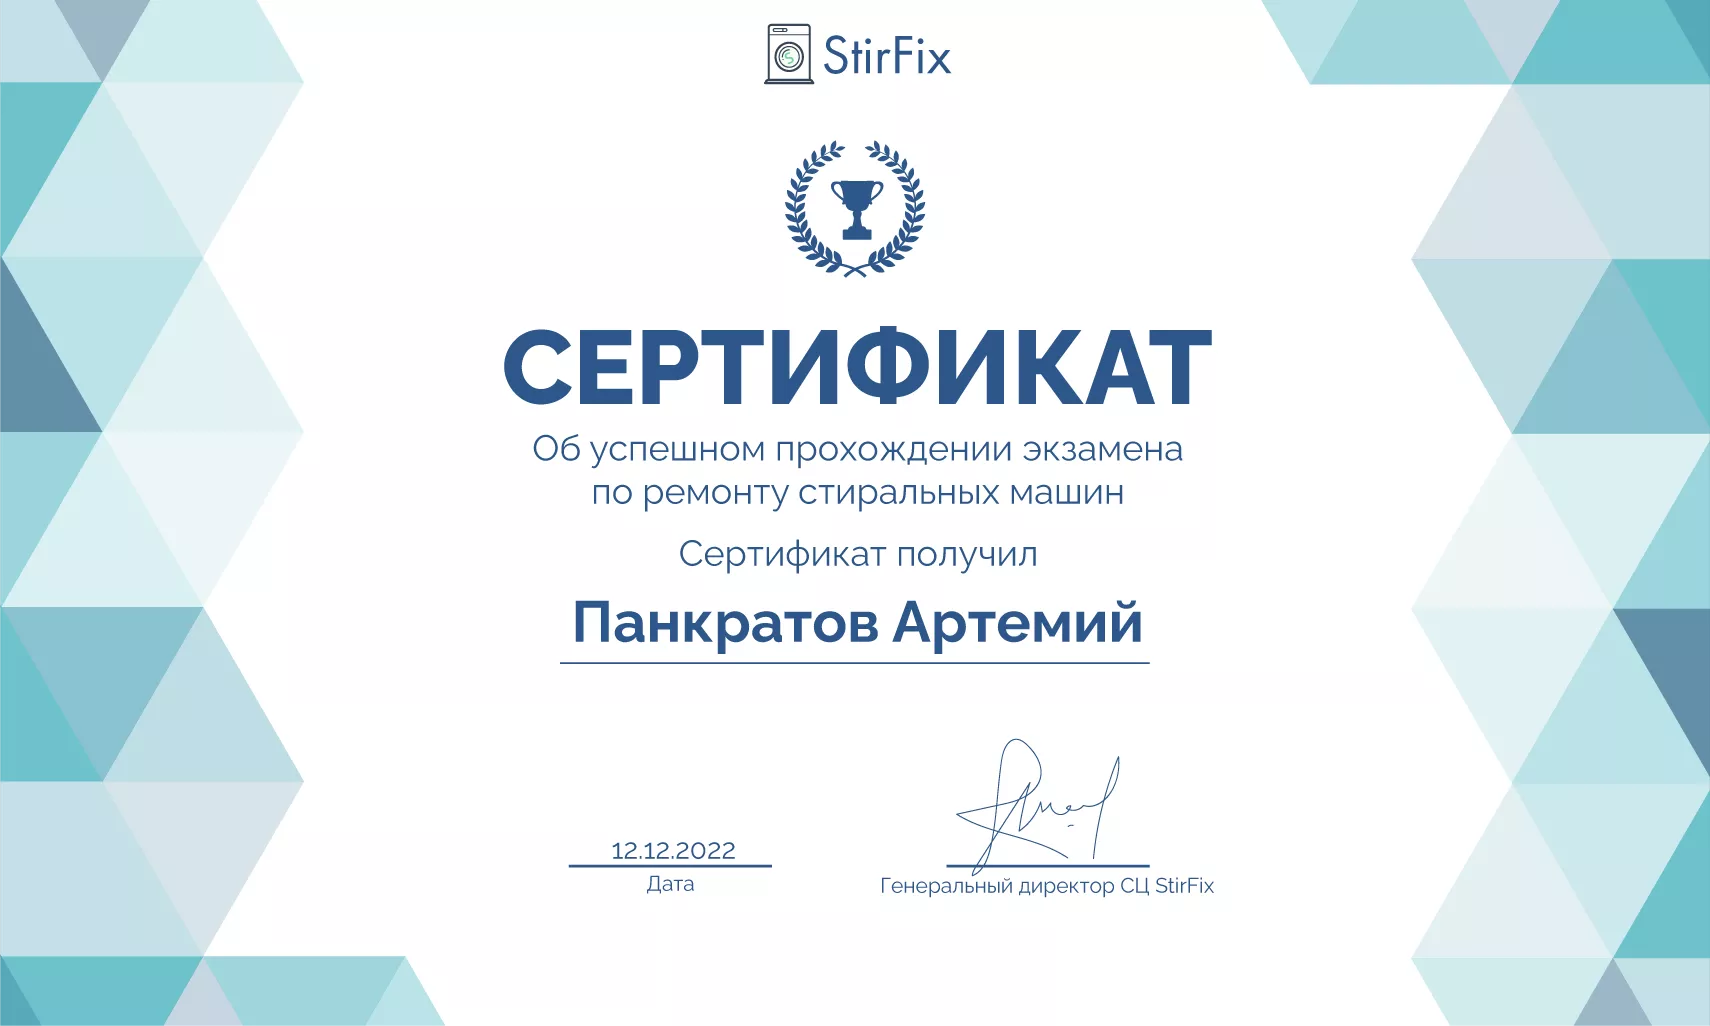 Панкратов Артемий сертификат телемастера